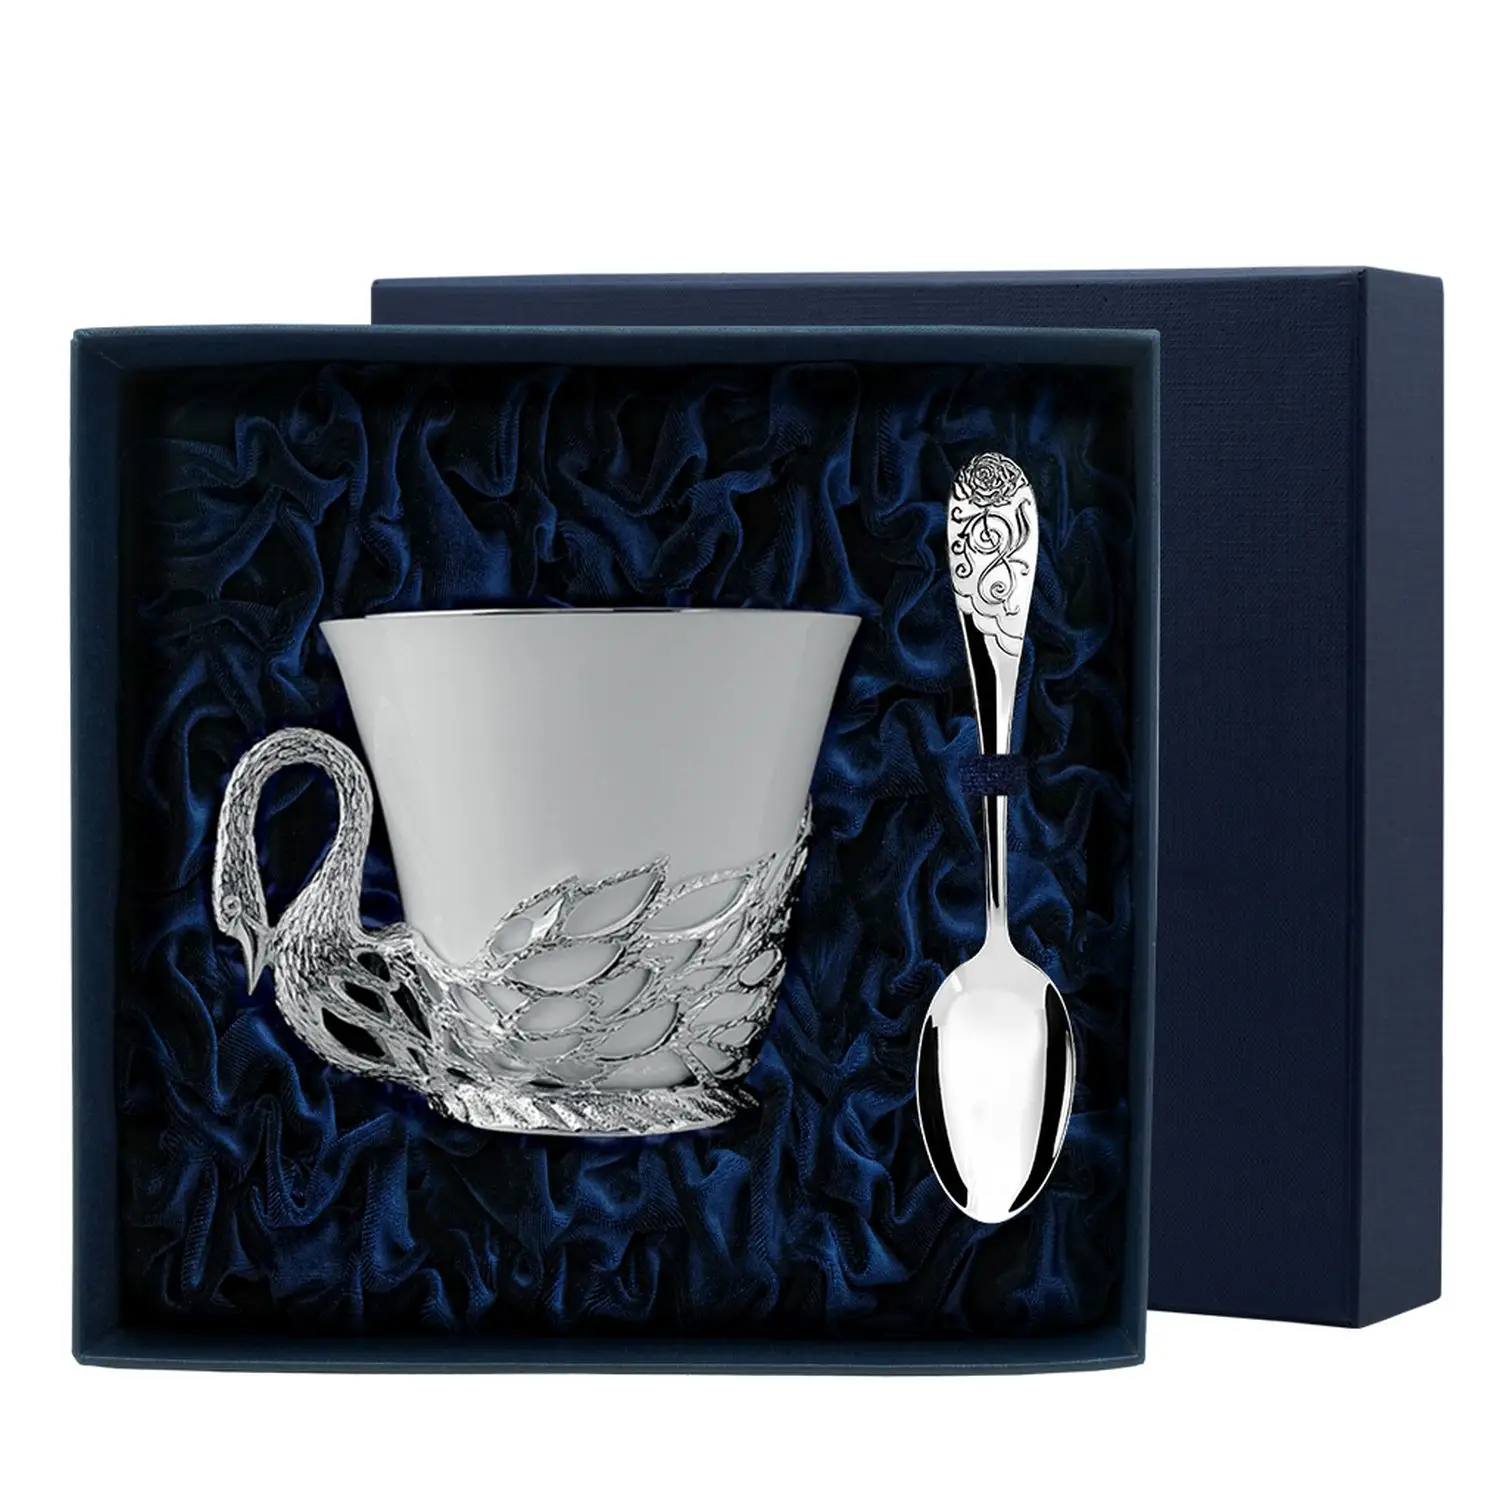 Набор чайная чашка Лебедь: ложка, чашка (Серебро 925) набор чайная чашка герб ложка чашка серебро 925